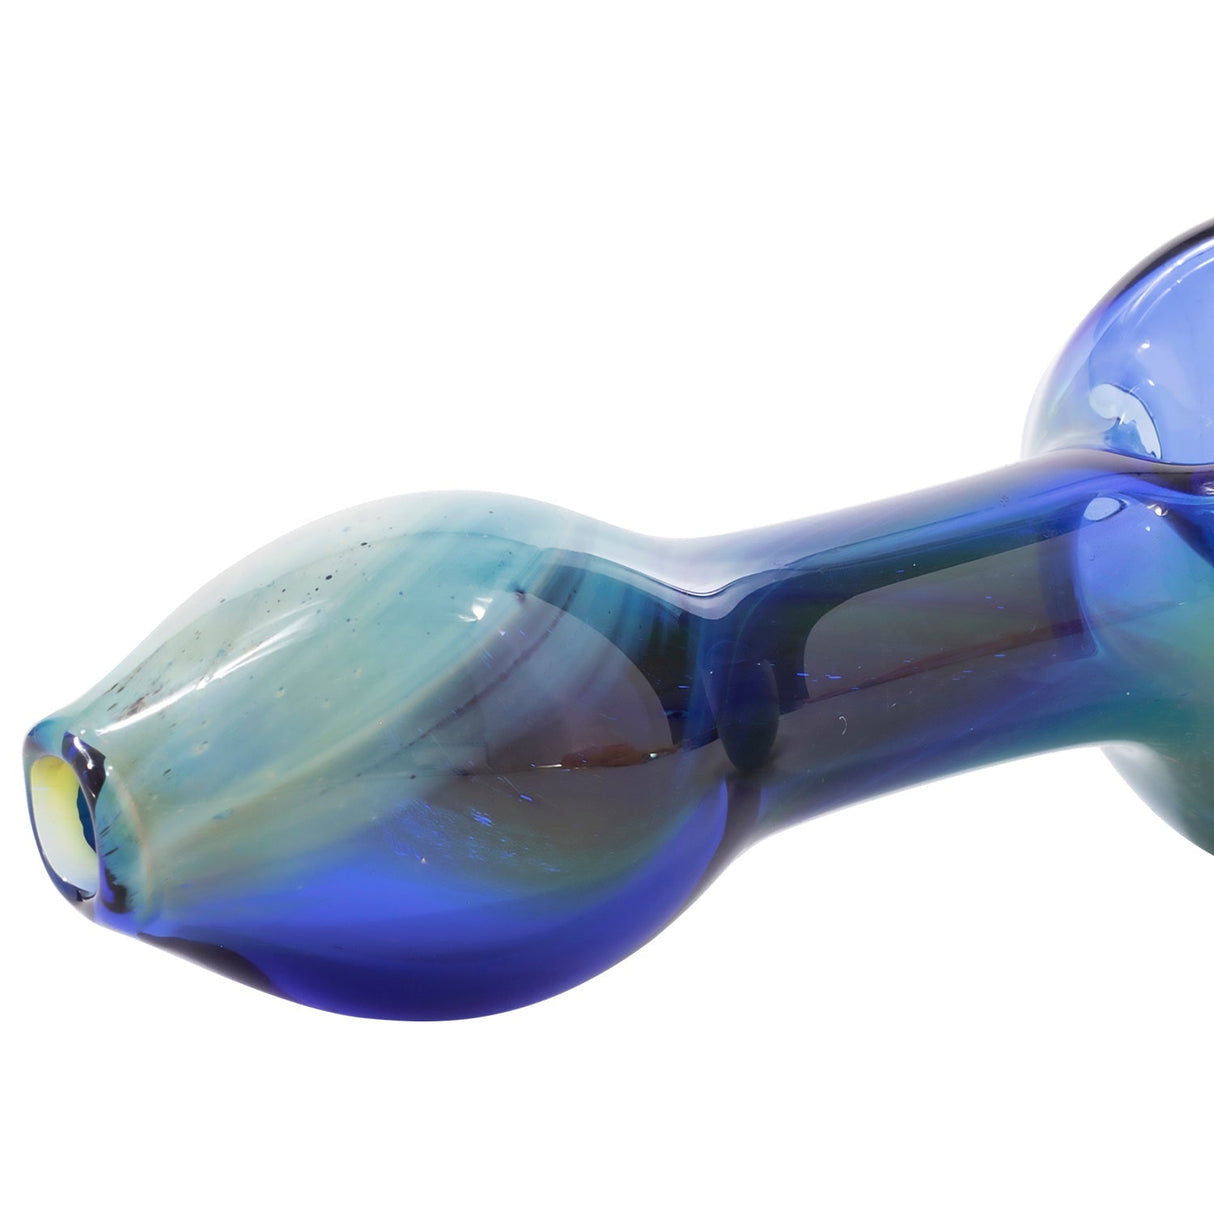 LA Pipes Nebula Spoon - Portable Borosilicate Glass Hand Pipe with Swirl Design